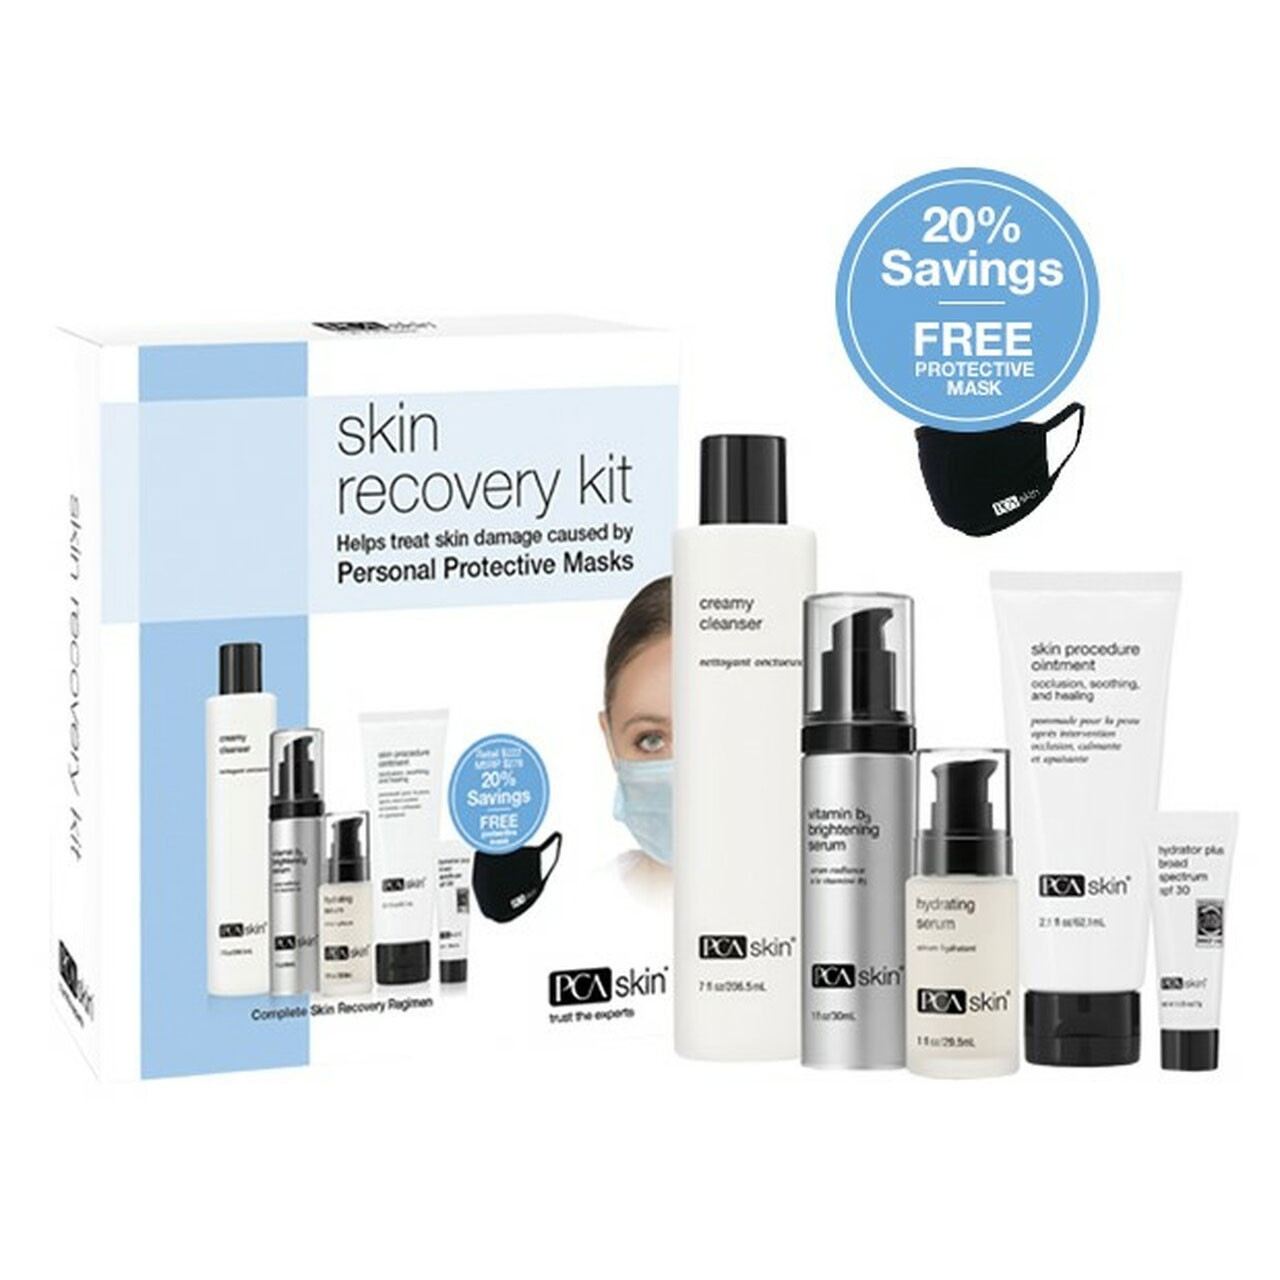 PCA Skin Skin Recovery Kit